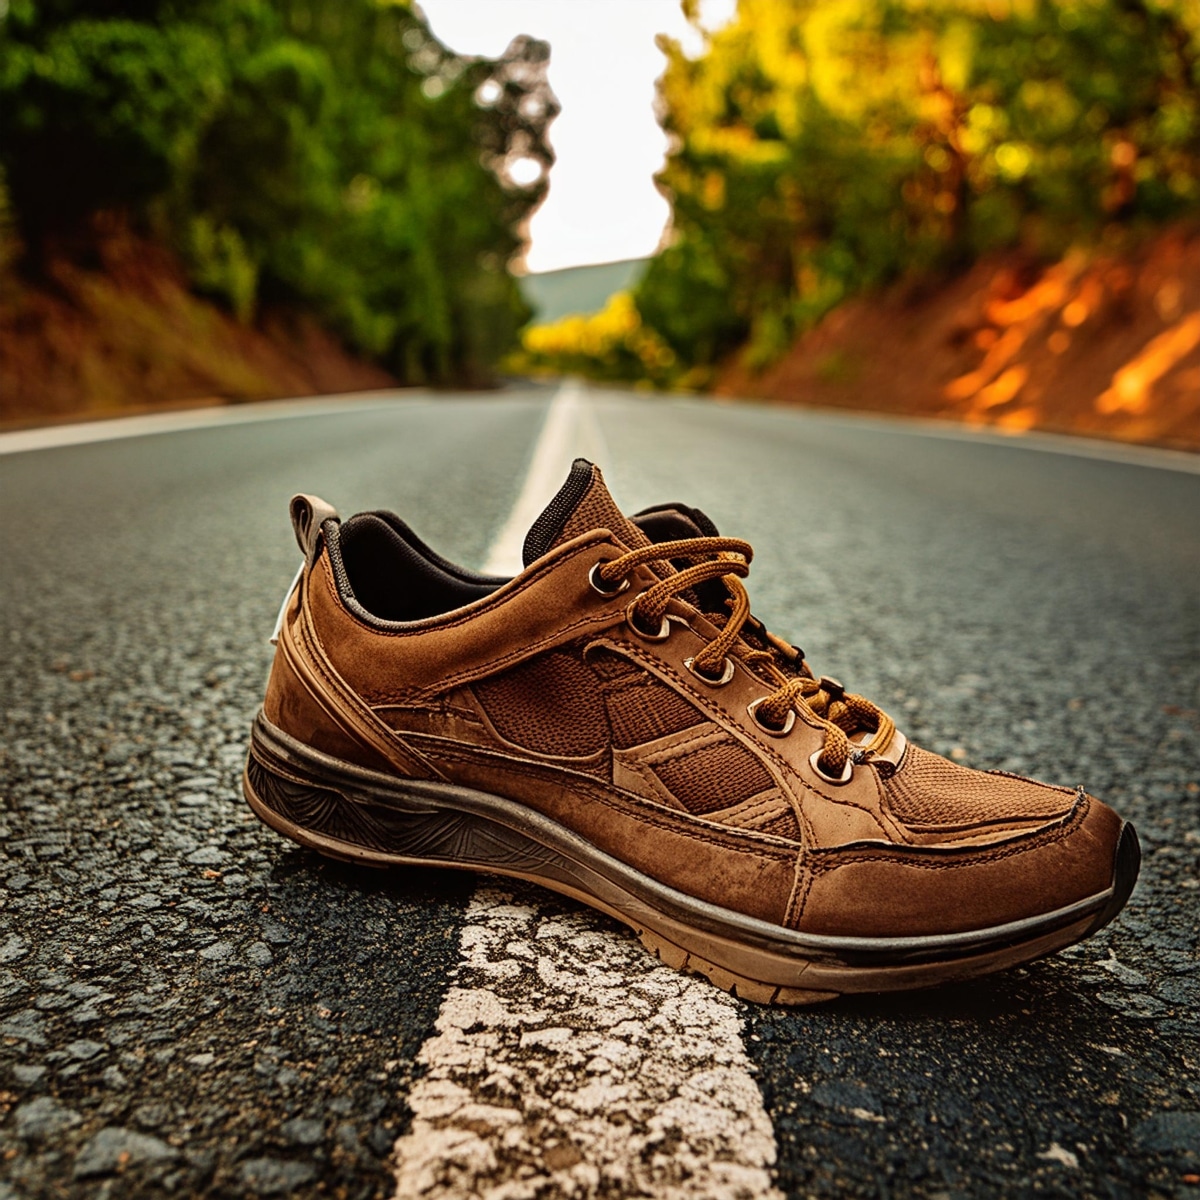 Chaussure-abandonné-sur-une-route